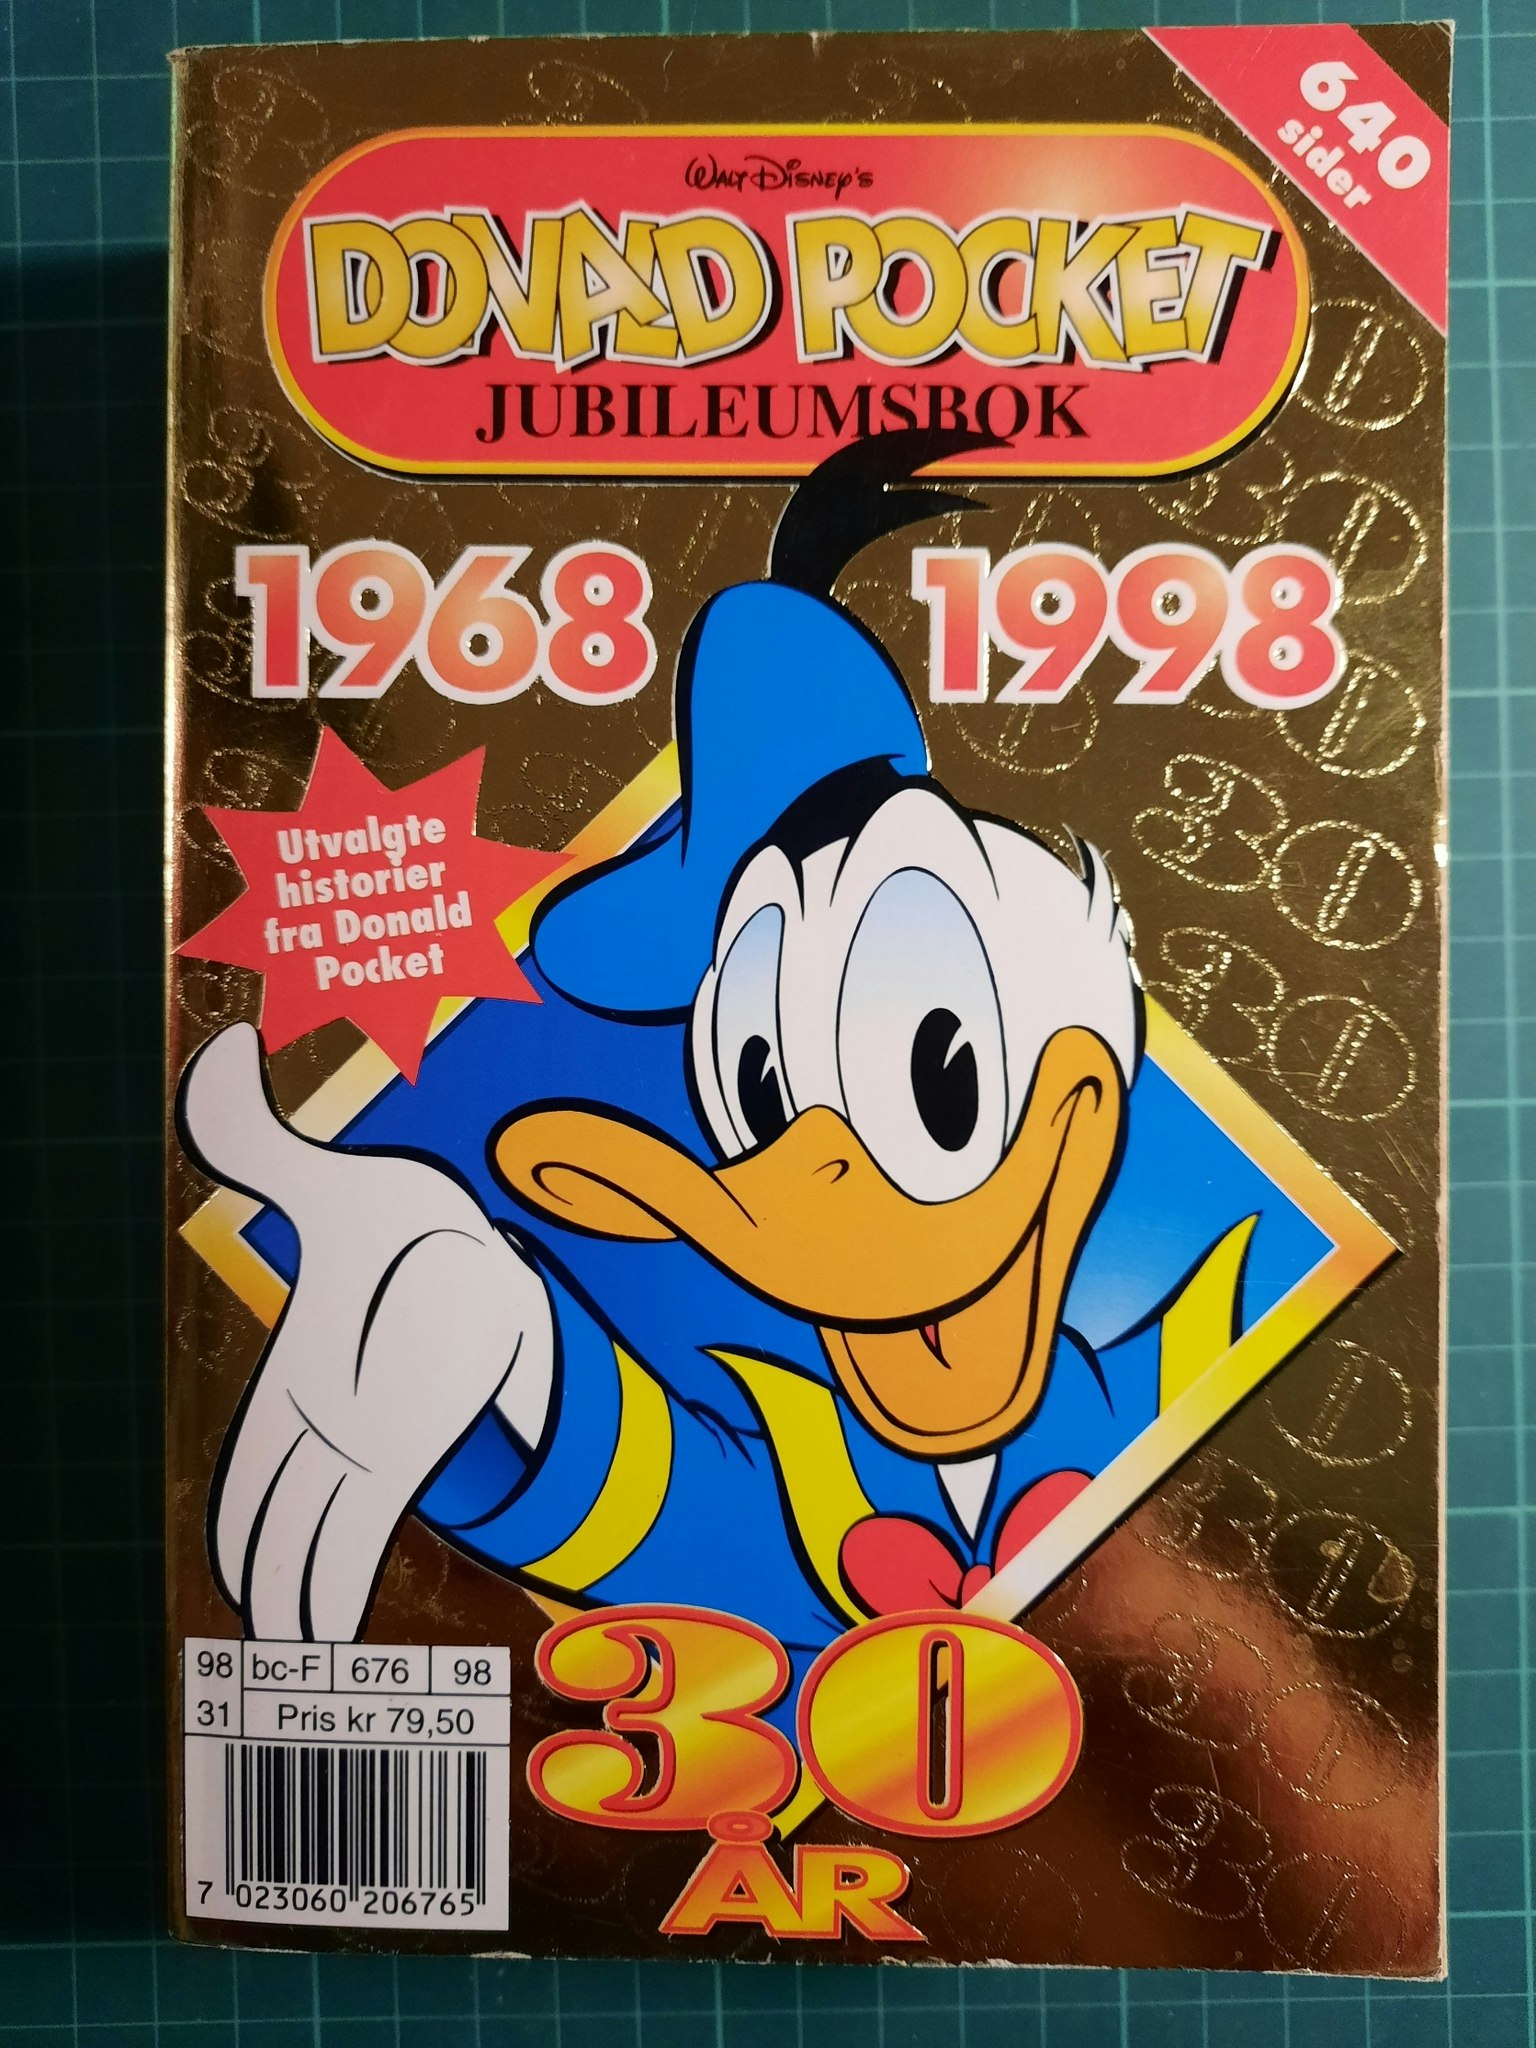 Donald pocket jubileumsbok 1968-1998